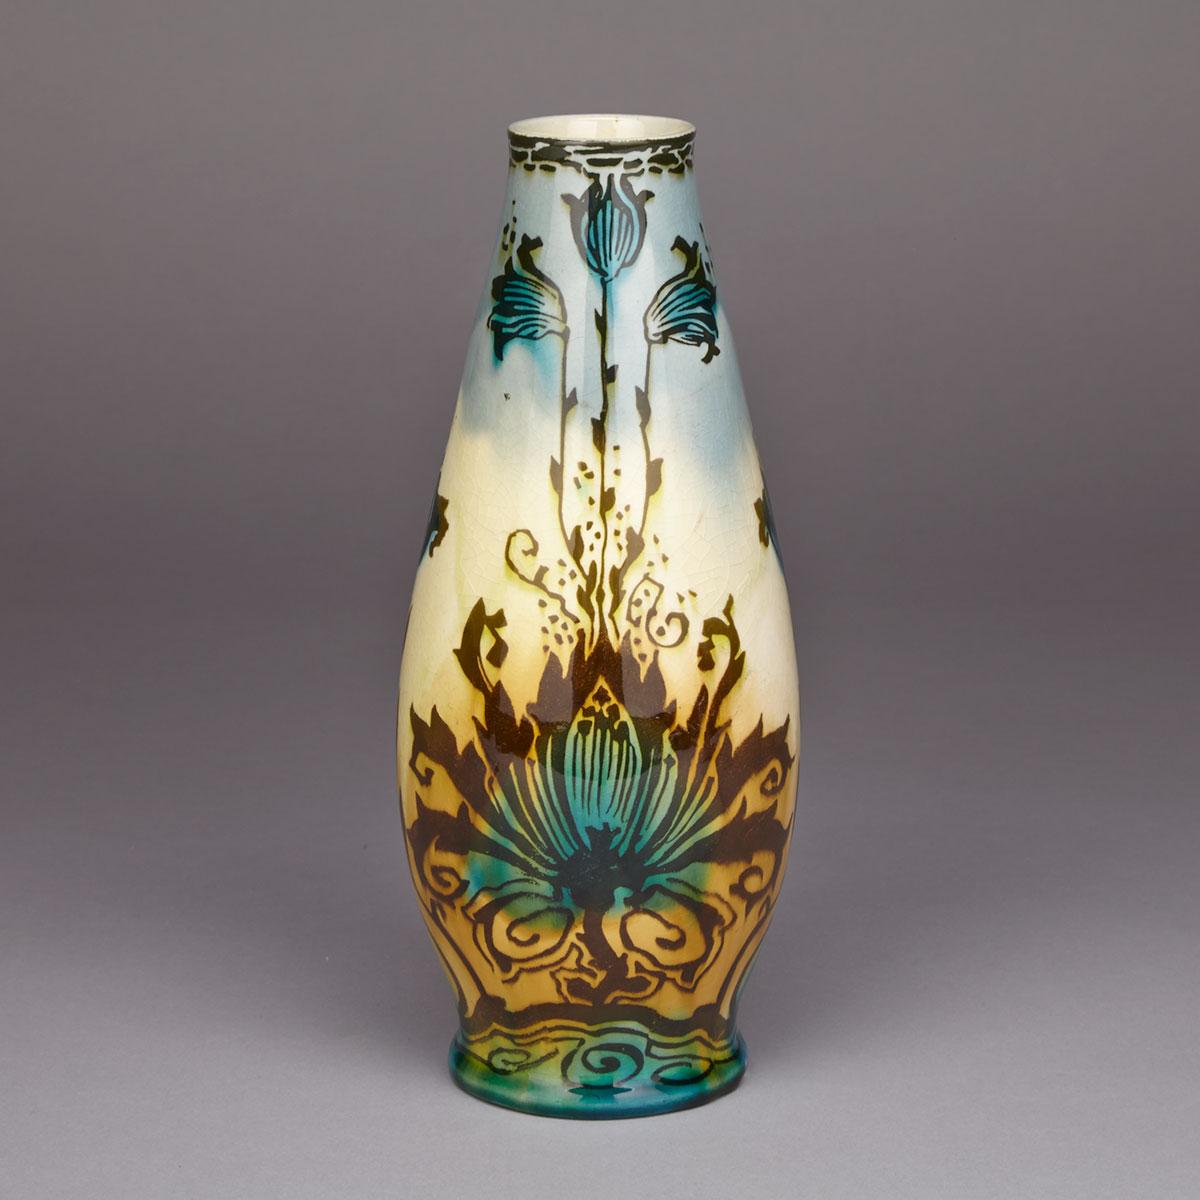 Mintons Faience Vase, c.1900